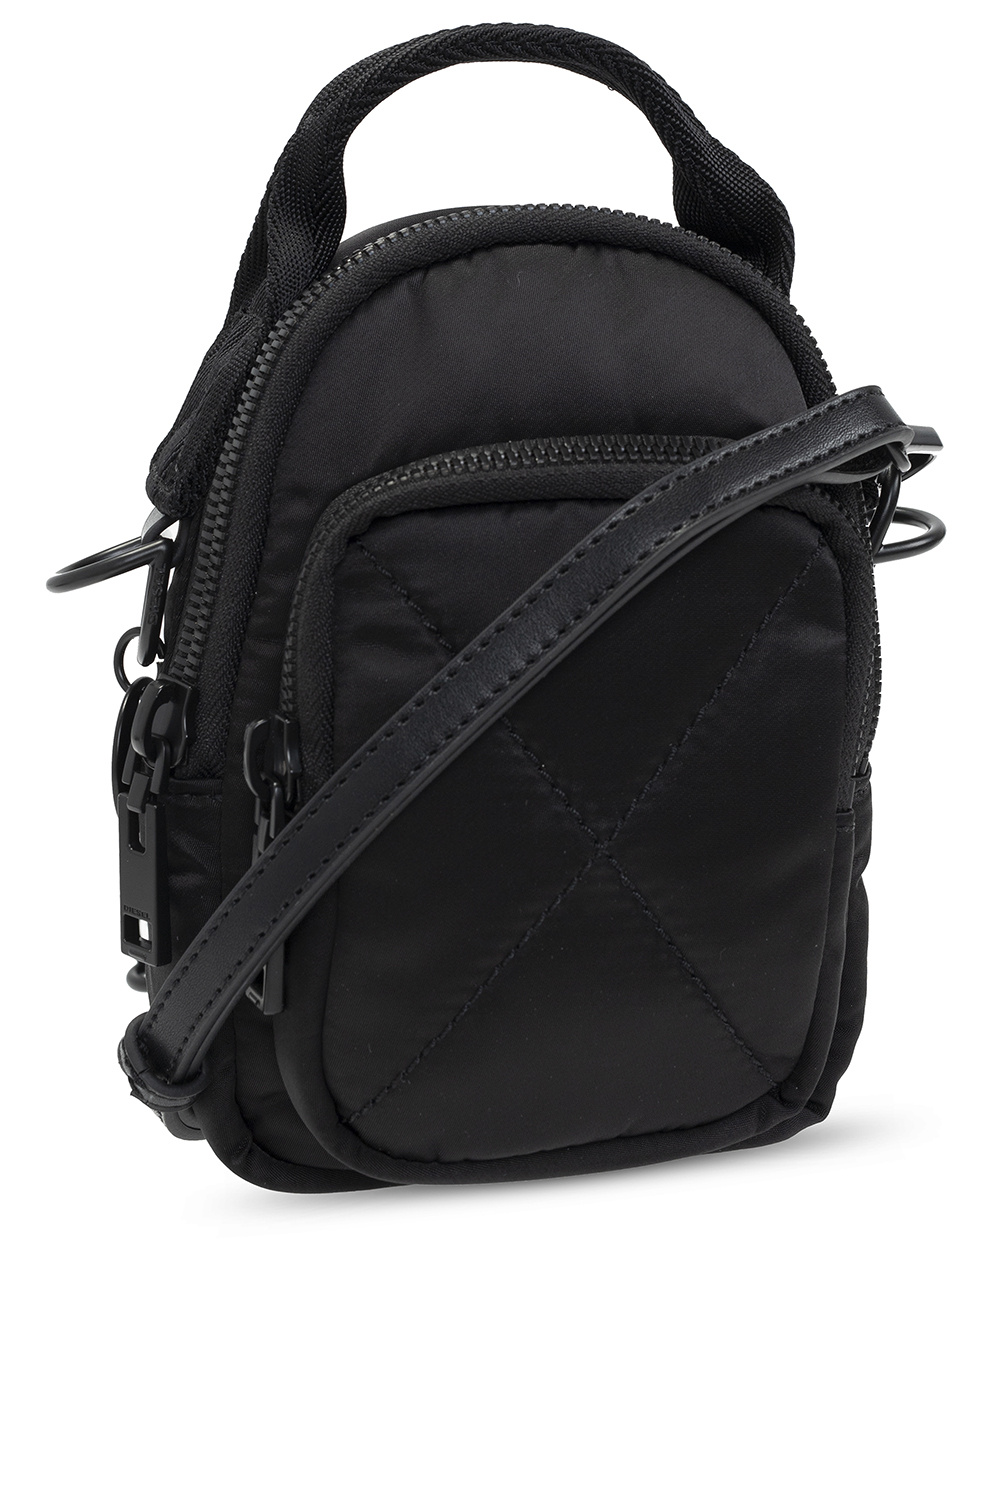 Diesel ‘Ledybag’ backpack